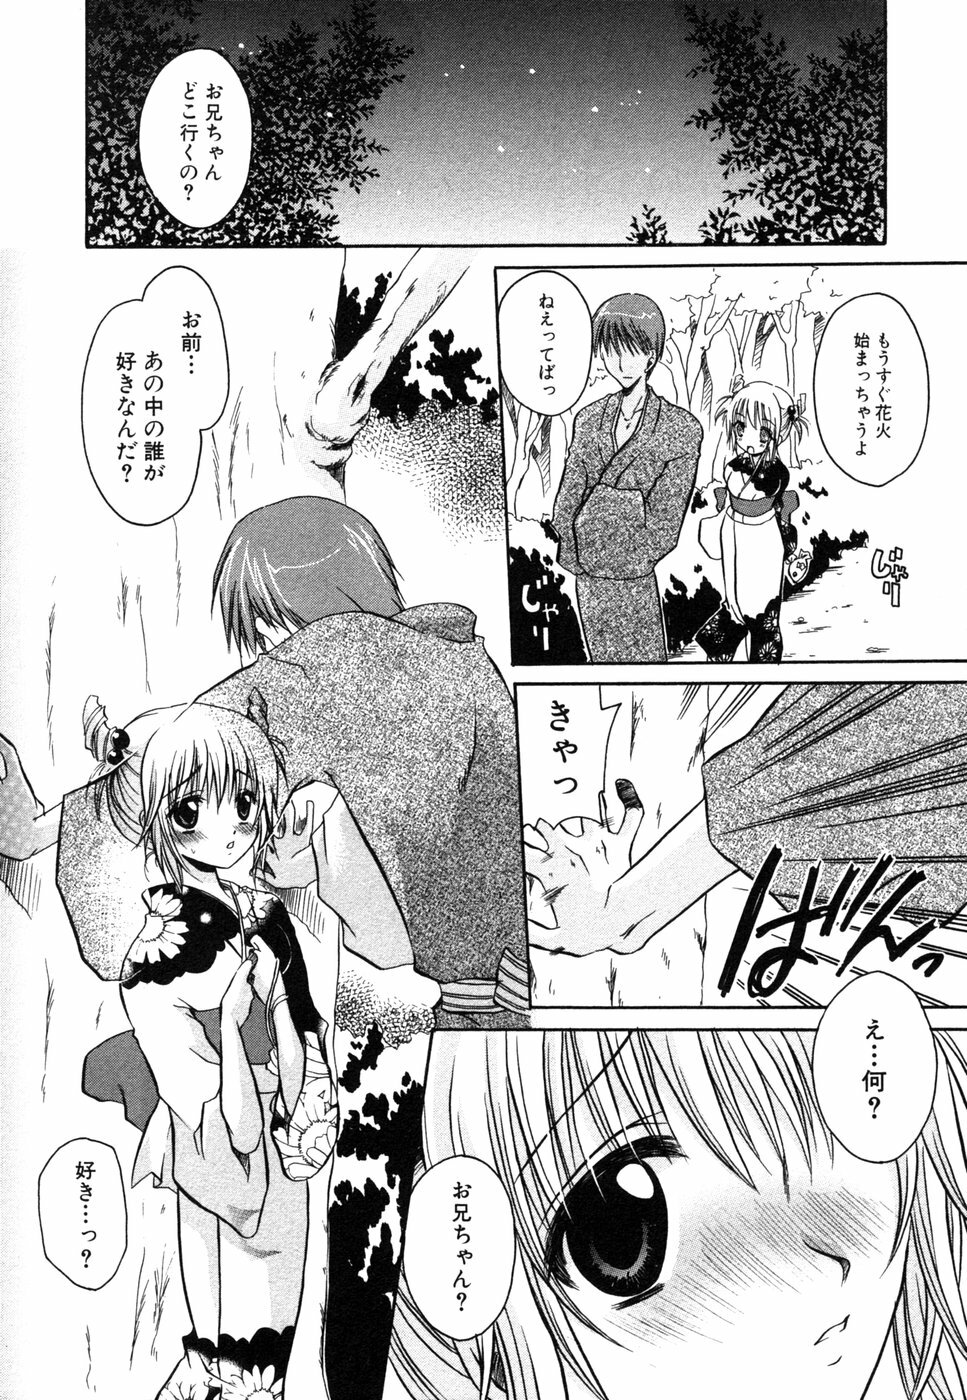 [Anthology] Himitsu no Tobira 5 Kinshin Ai Anthology (The Secret Door) page 9 full